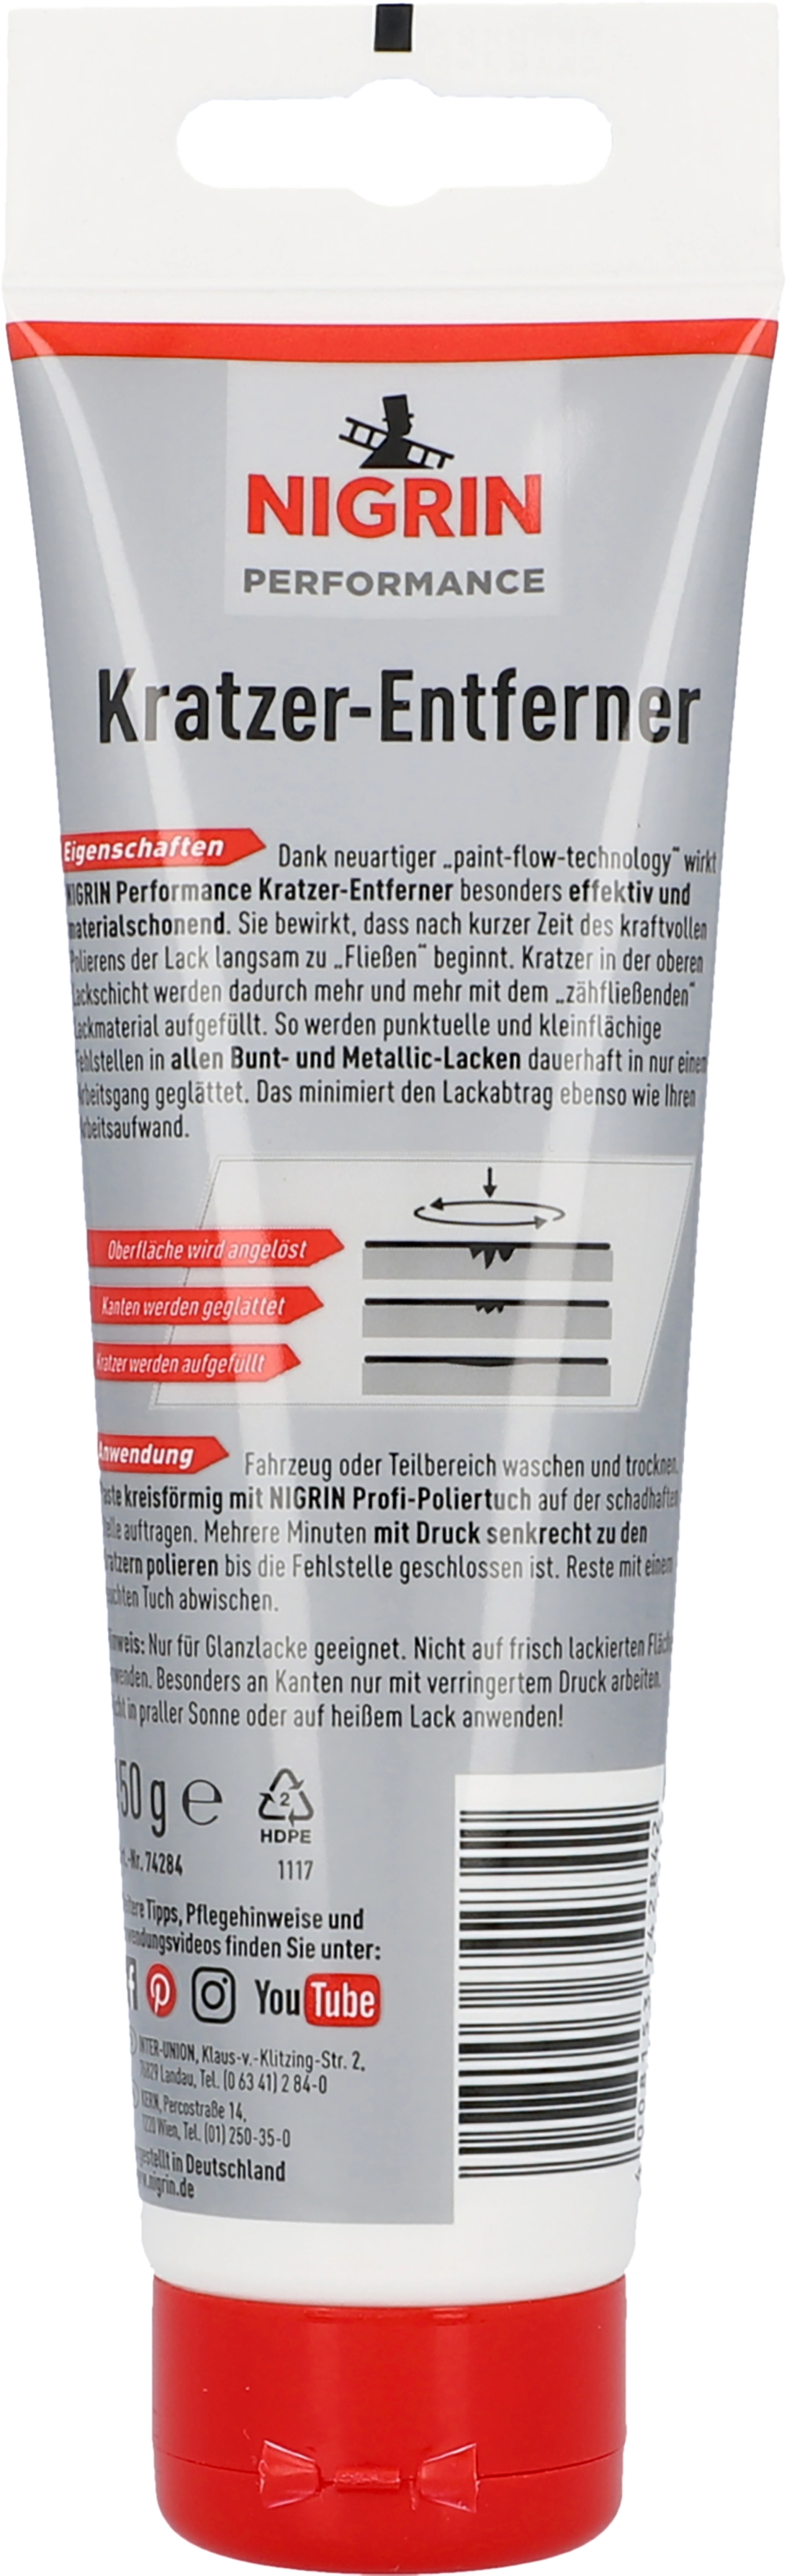 Kratzer-Entferner schwarz 150 g